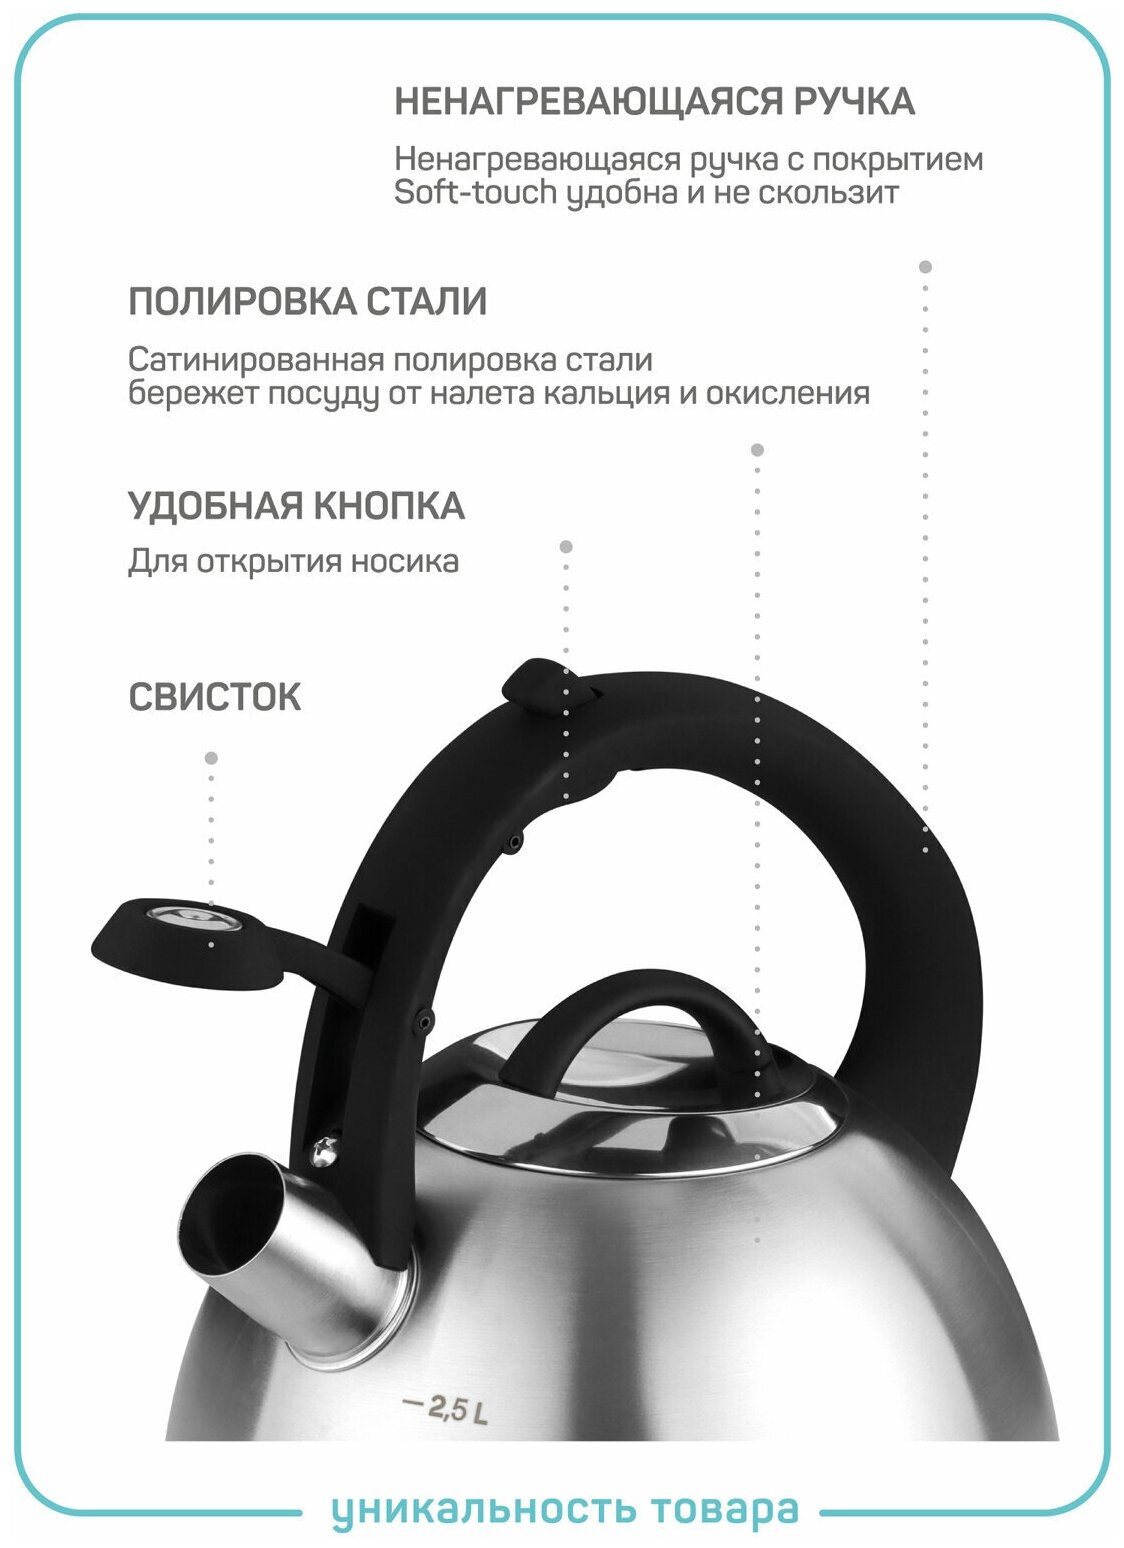 Чайник со свистком Tommaso-2,5 стальной, графит